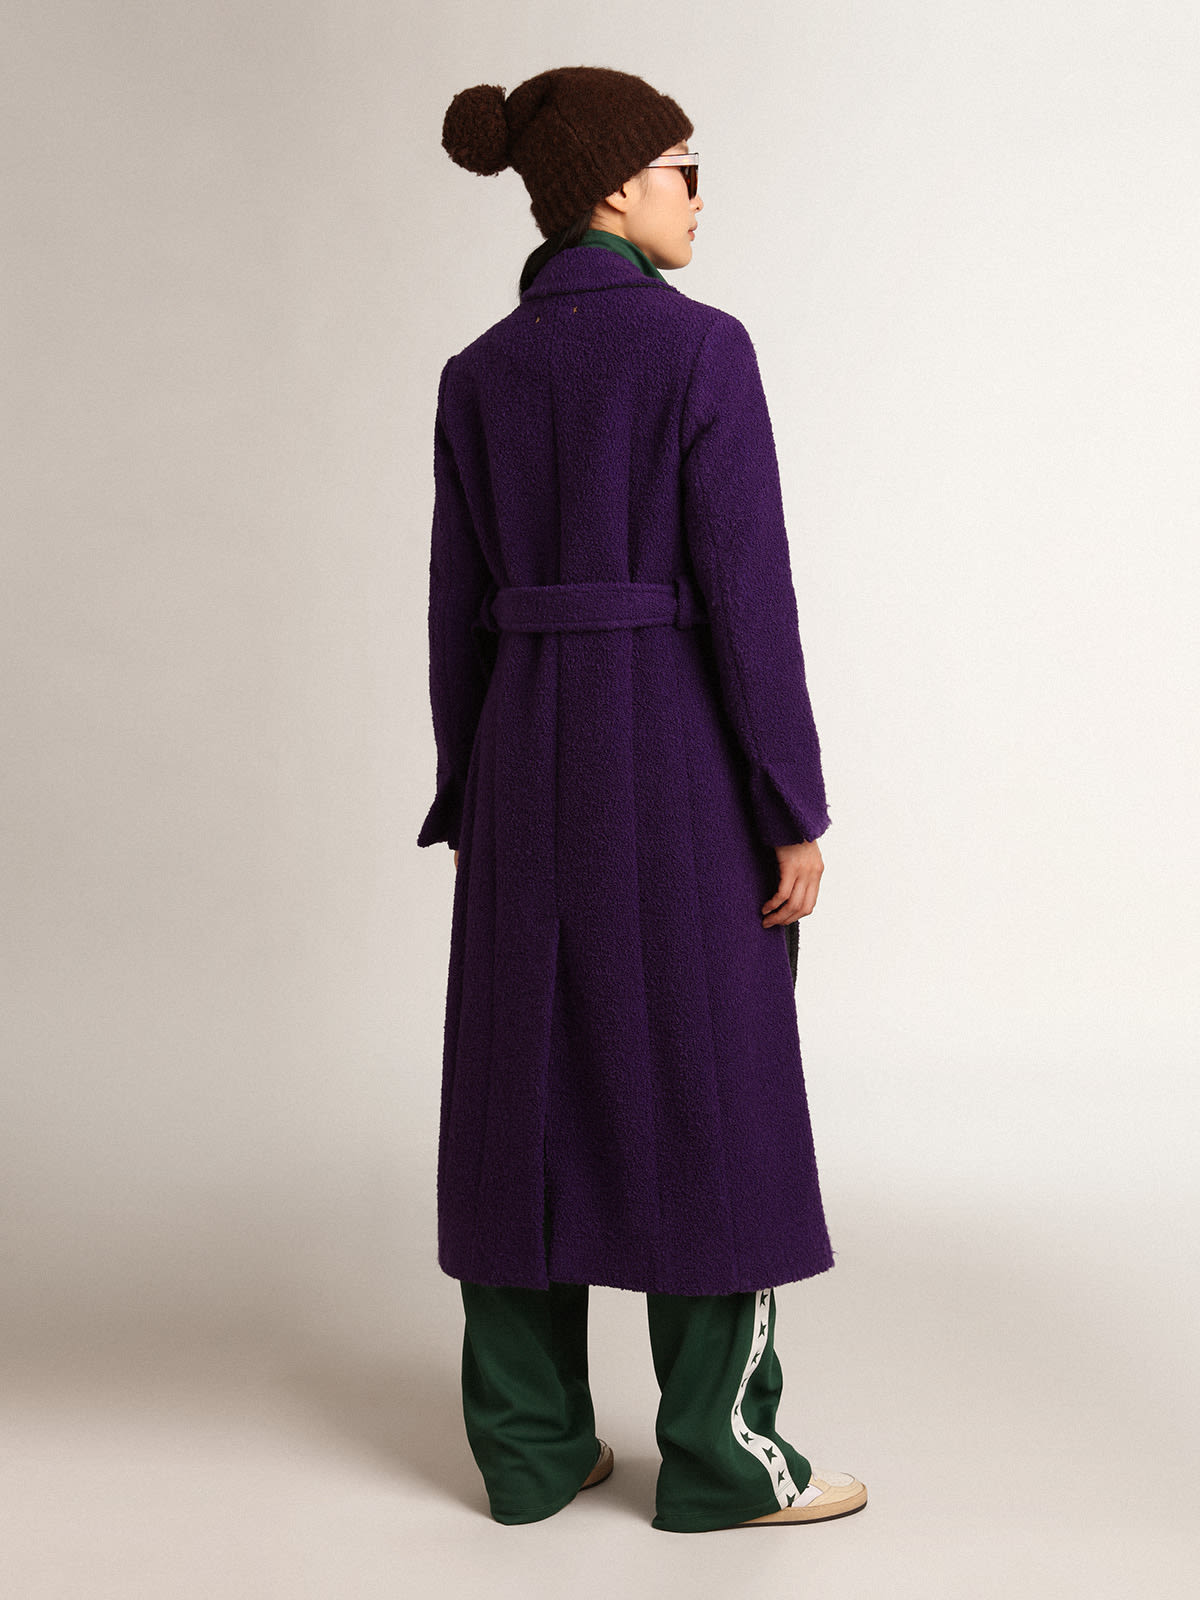 Golden Goose - Cappotto Collezione Journey color viola indaco in lana e fodera interna con stampa disegnata in 